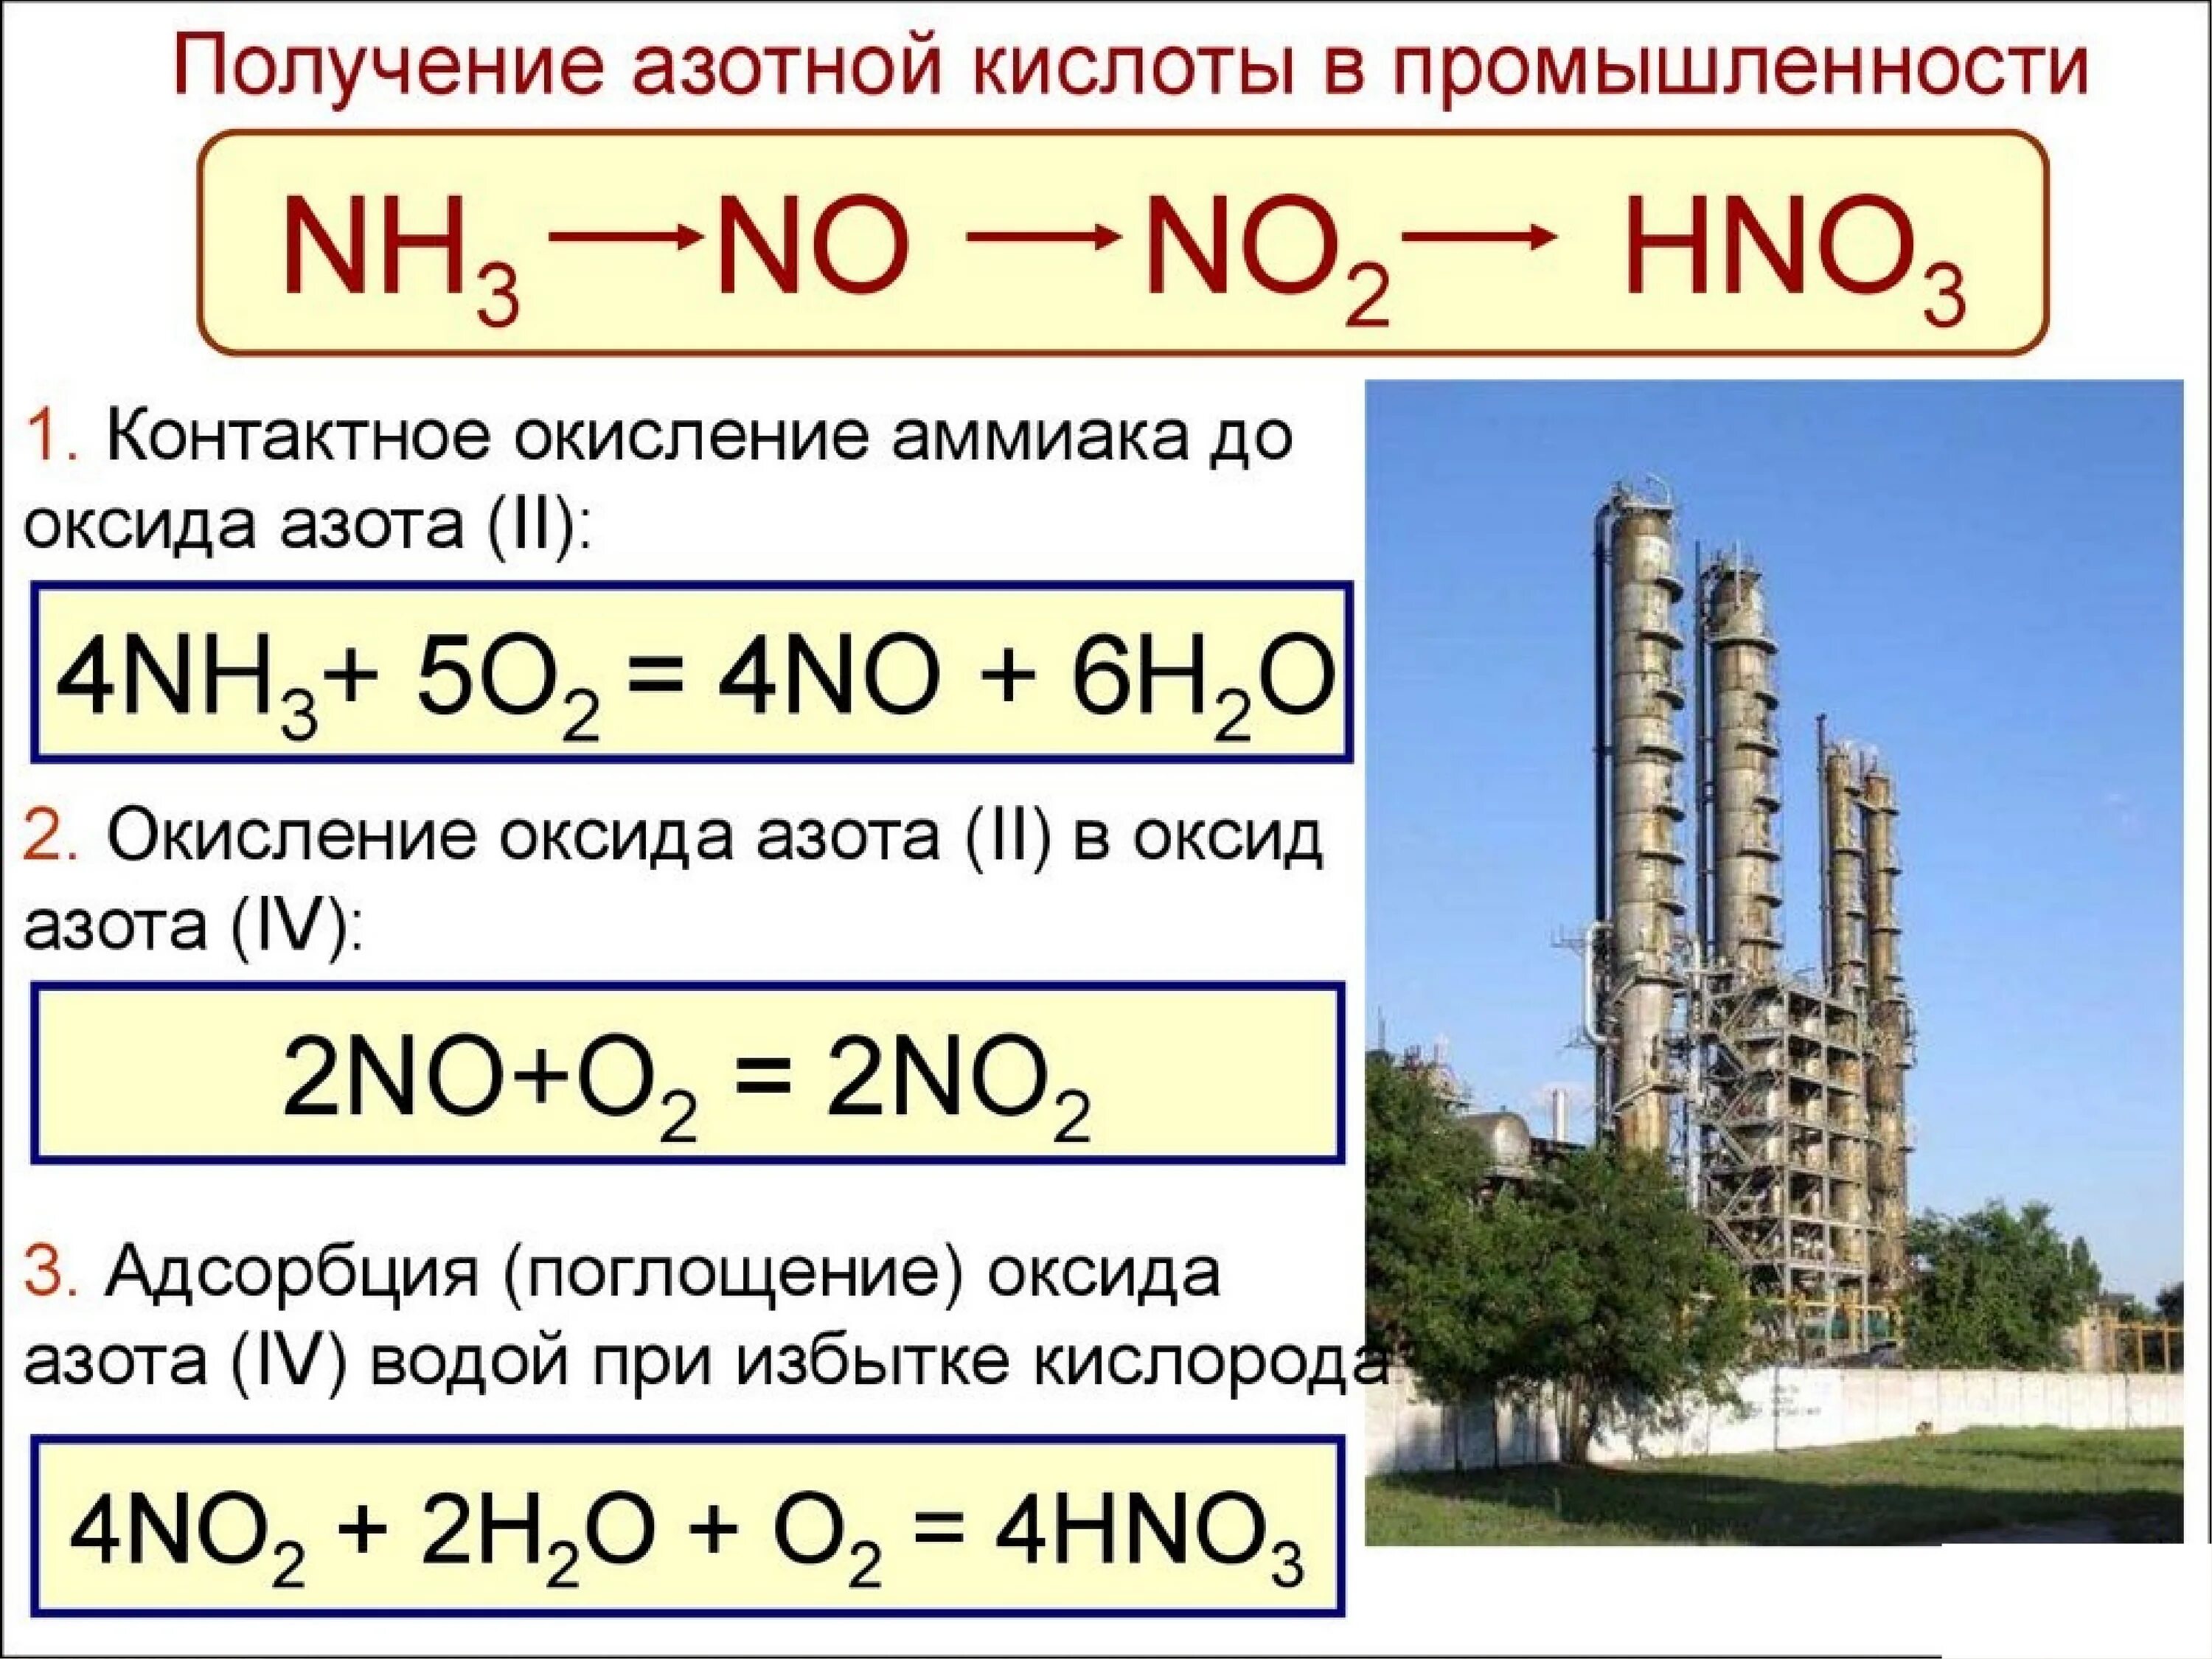 Hno3 с основными оксидами. Получение азотной кислоты из аммиака. Как из аммиака получить азотную кислоту. Как из аммиака получить оксид азота 2. Получение азотной кислоты из no2.